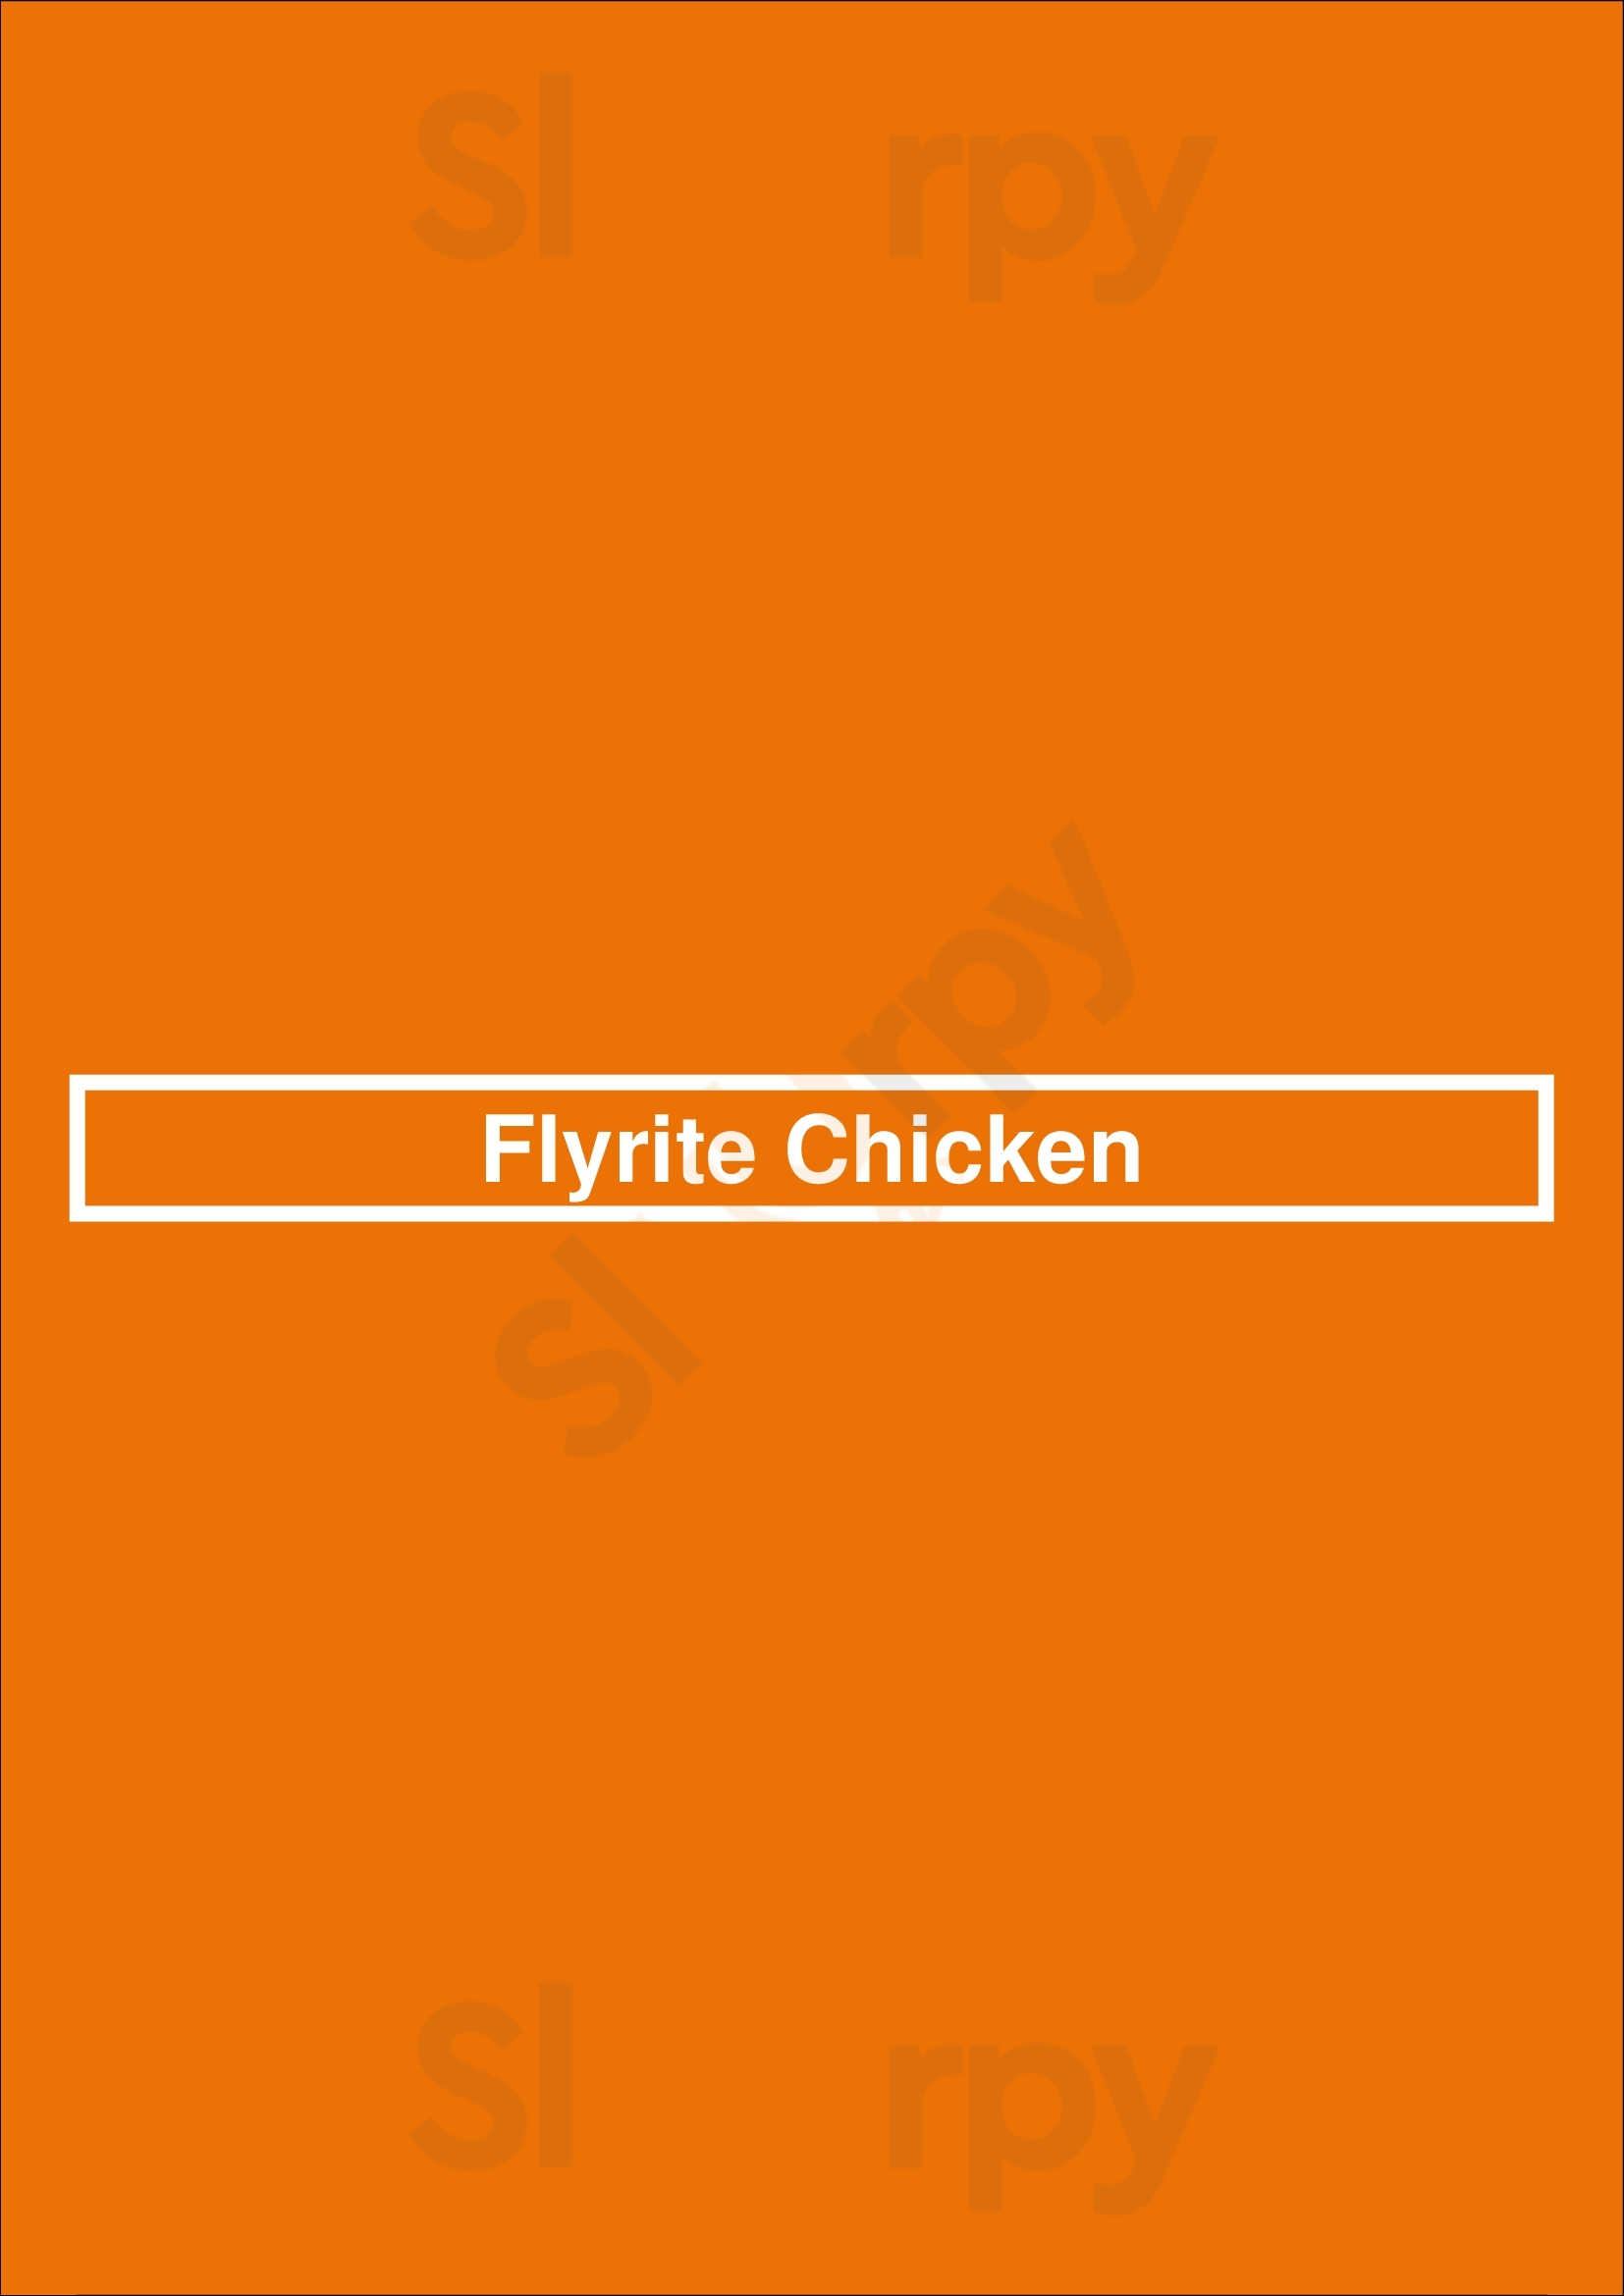 Flyrite Chicken Austin Menu - 1